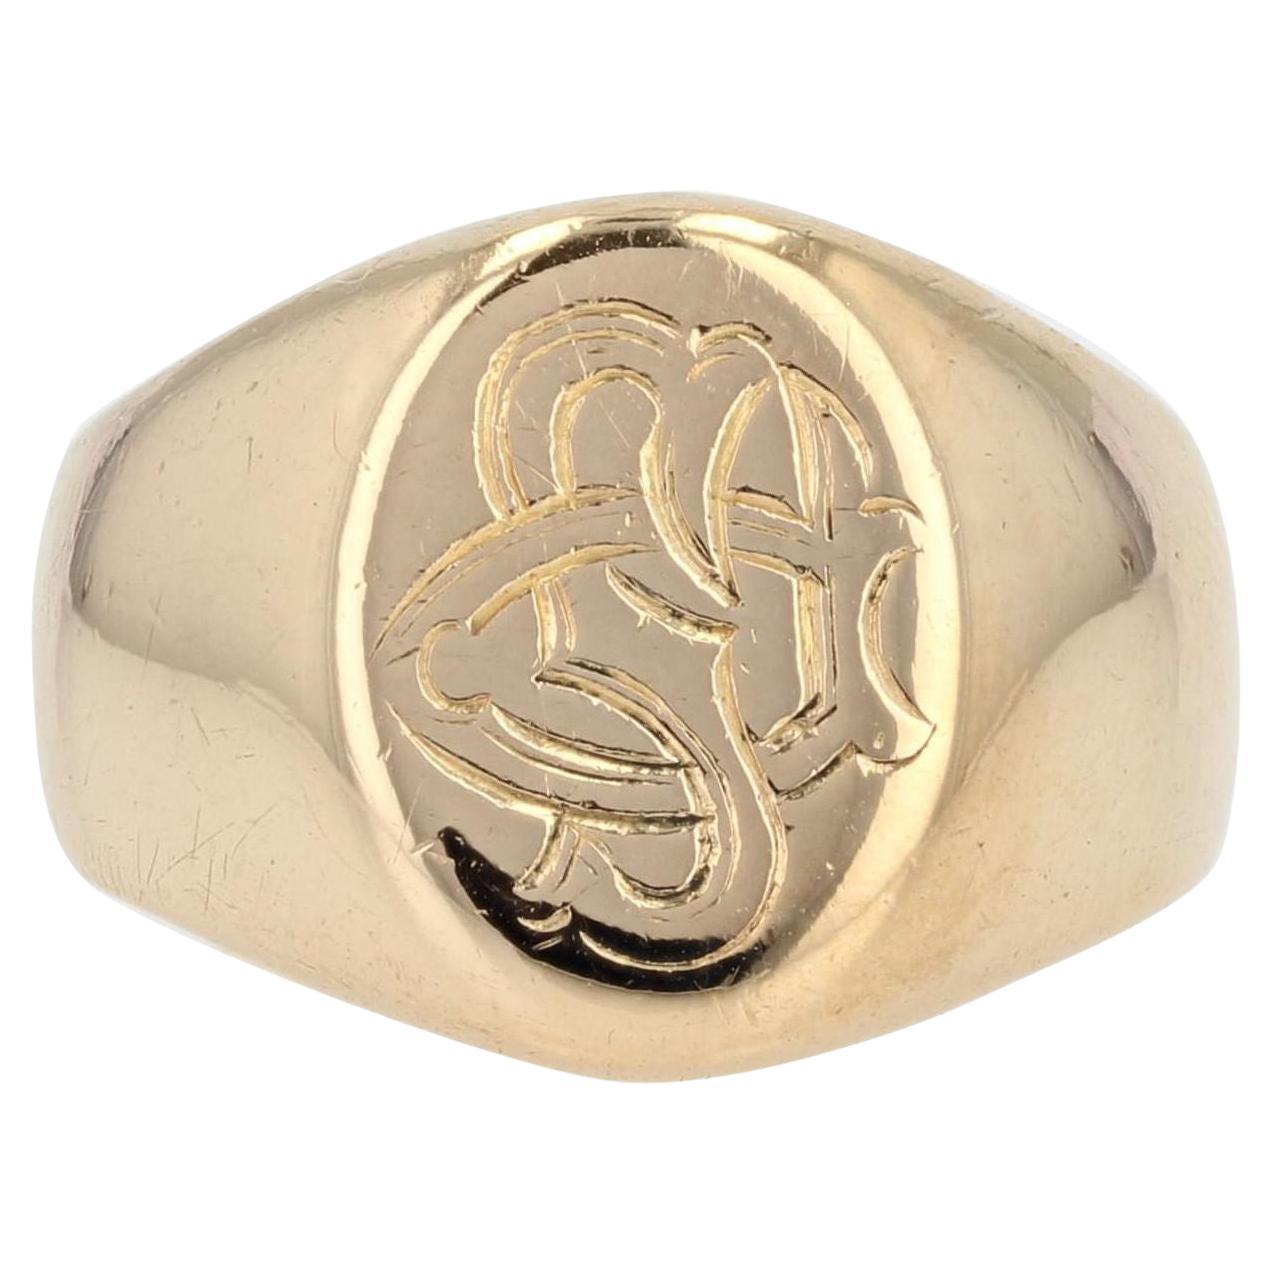 Bespoke Signet Ring Shop - Heraldic Engravings